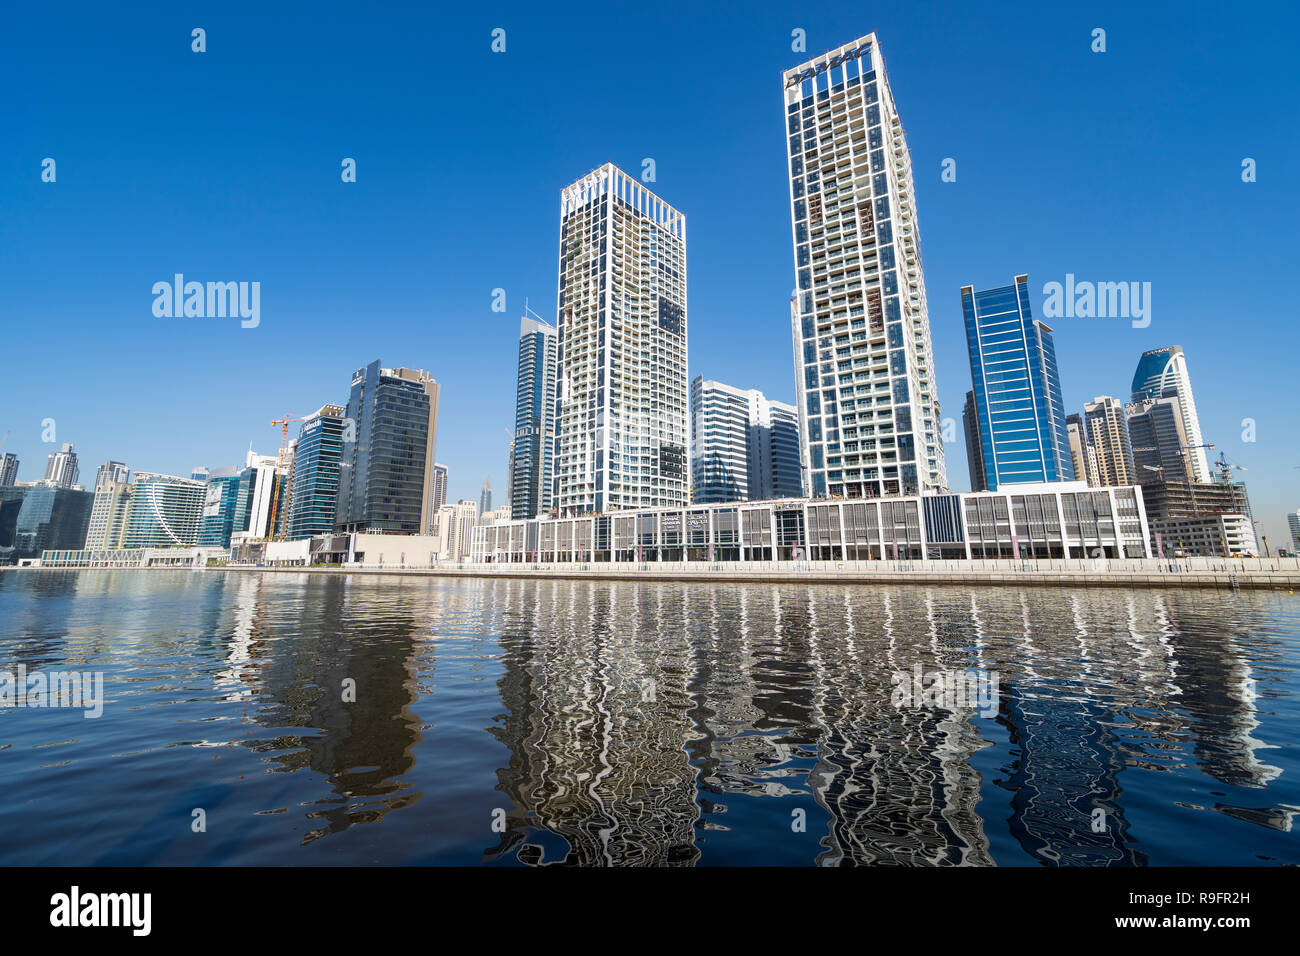 Tagsüber Blick auf die moderne Skyline der Business Bay und dem Bach Wasserstraße in Dubai, Vereinigte Arabische Emirate Stockfoto